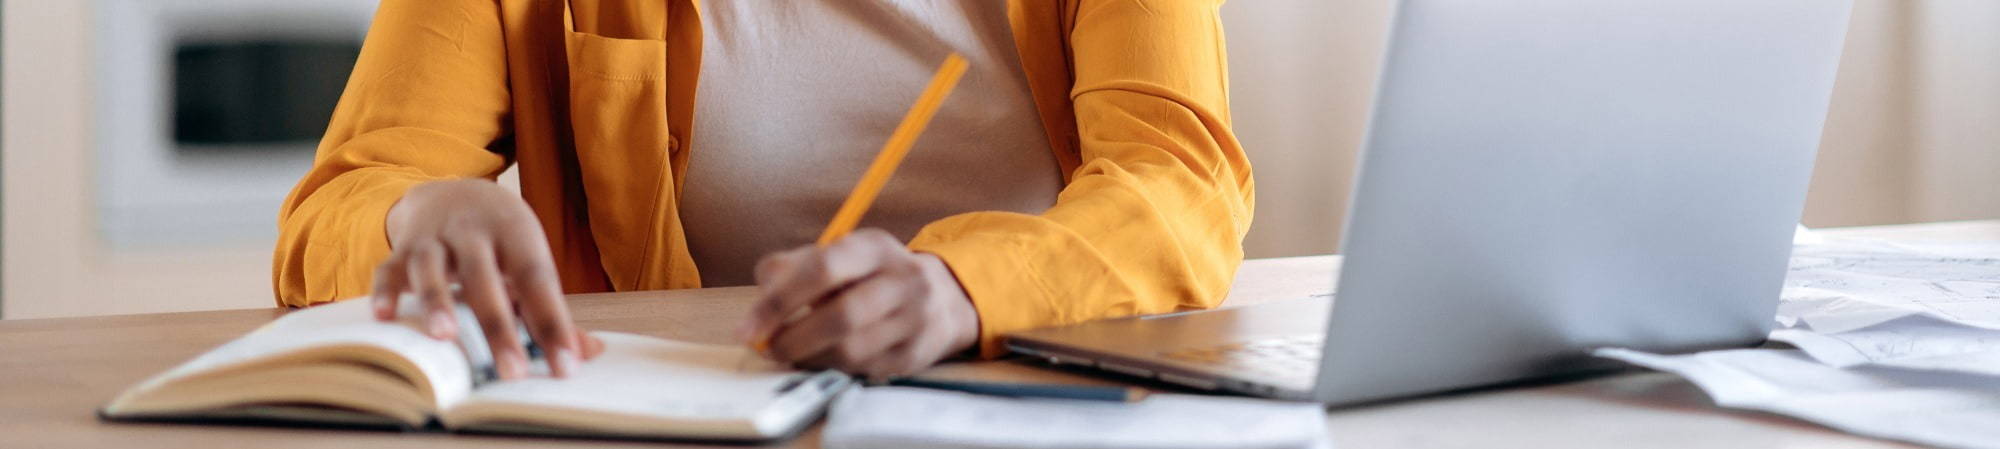 Woman taking notes beside laptop